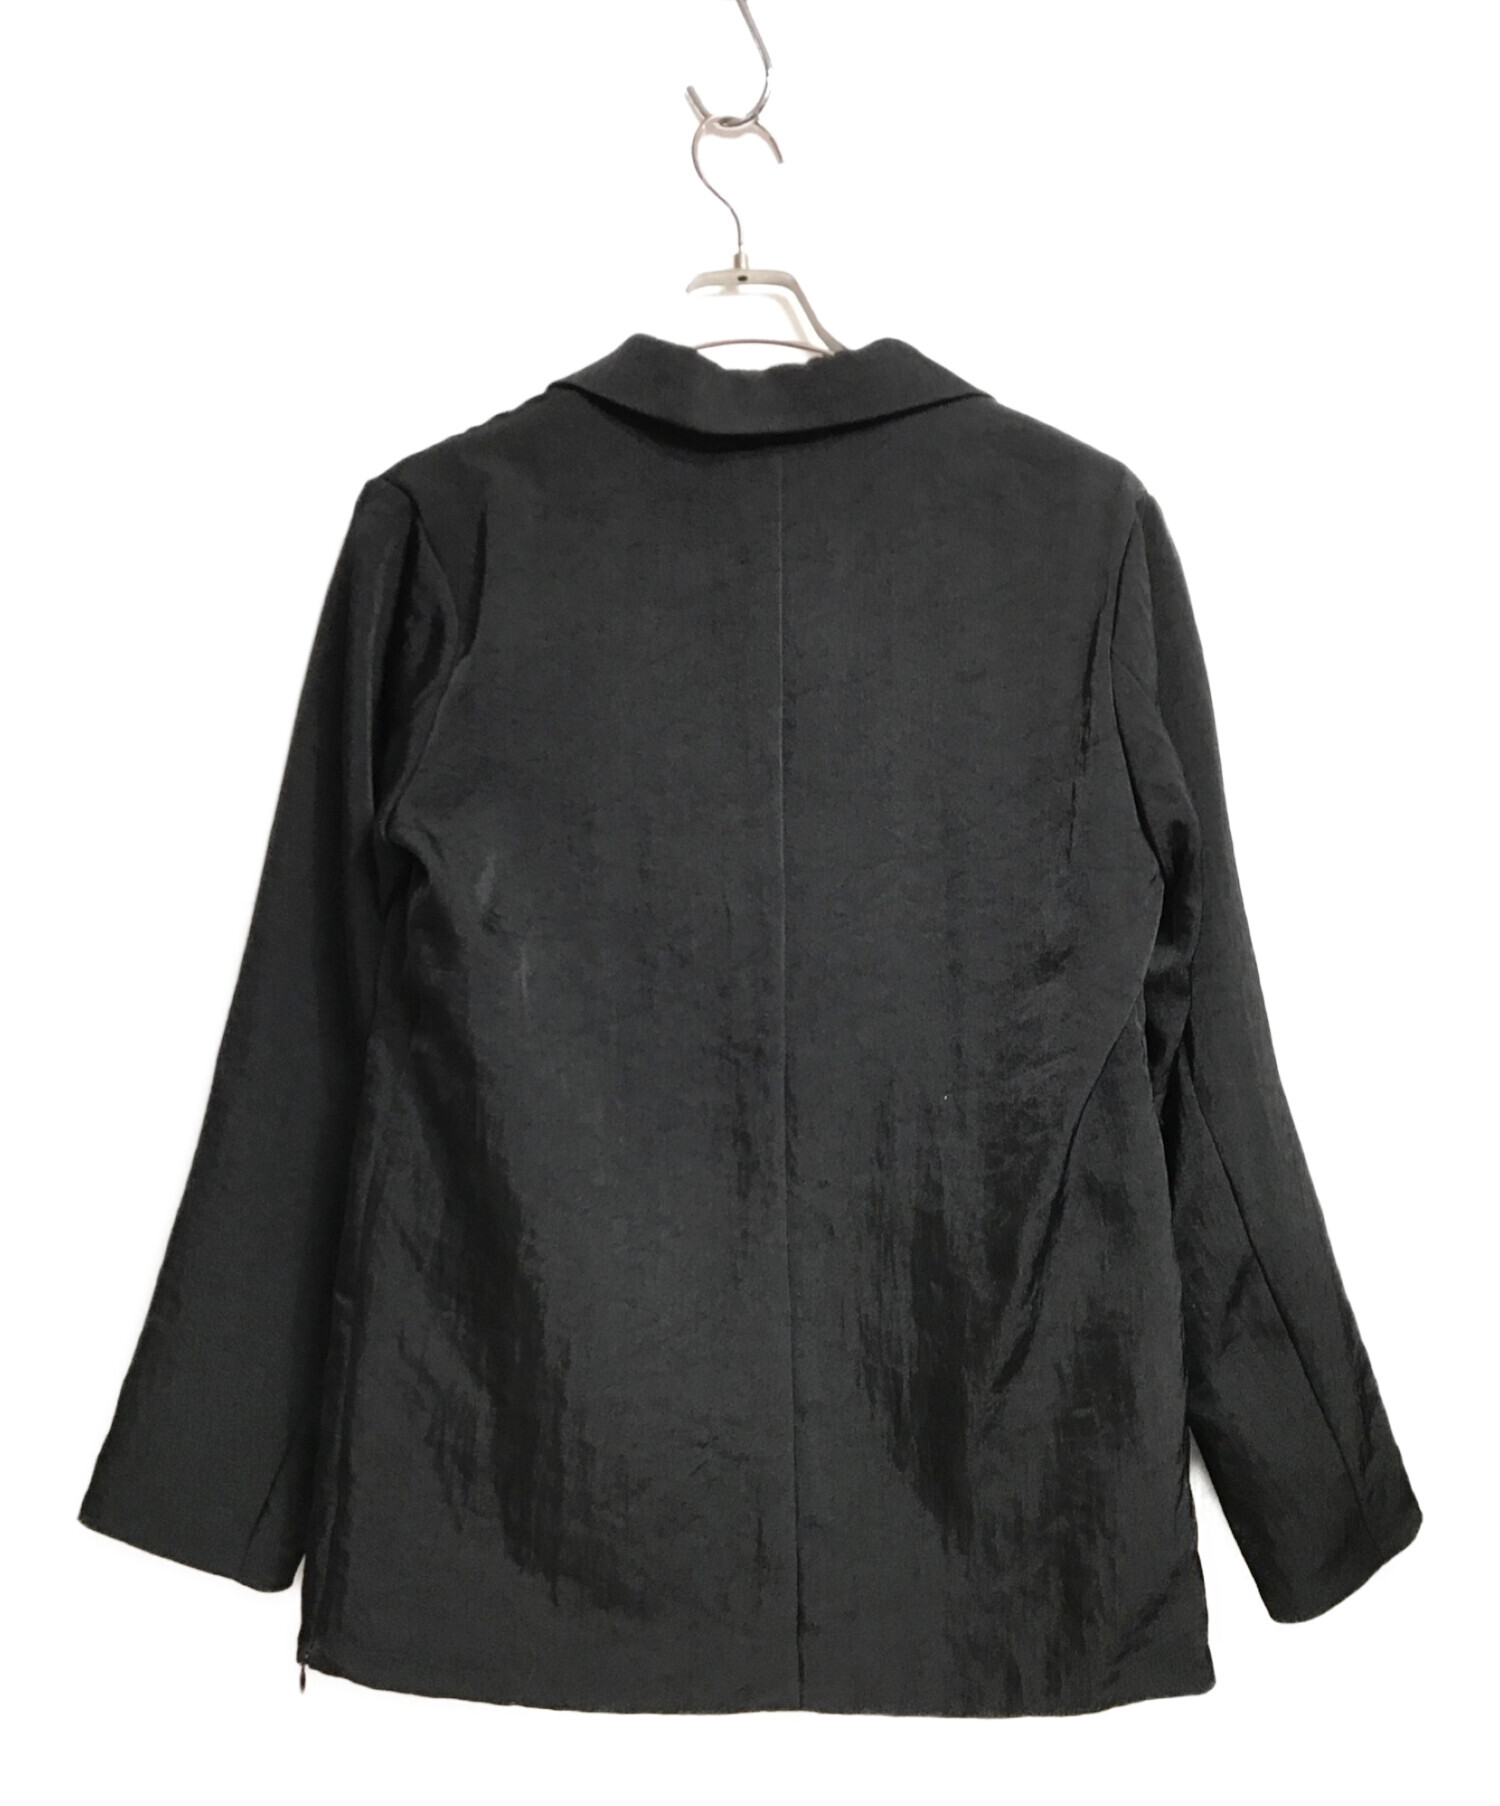 ブラックサイズenof   twill slit jacket サイズM